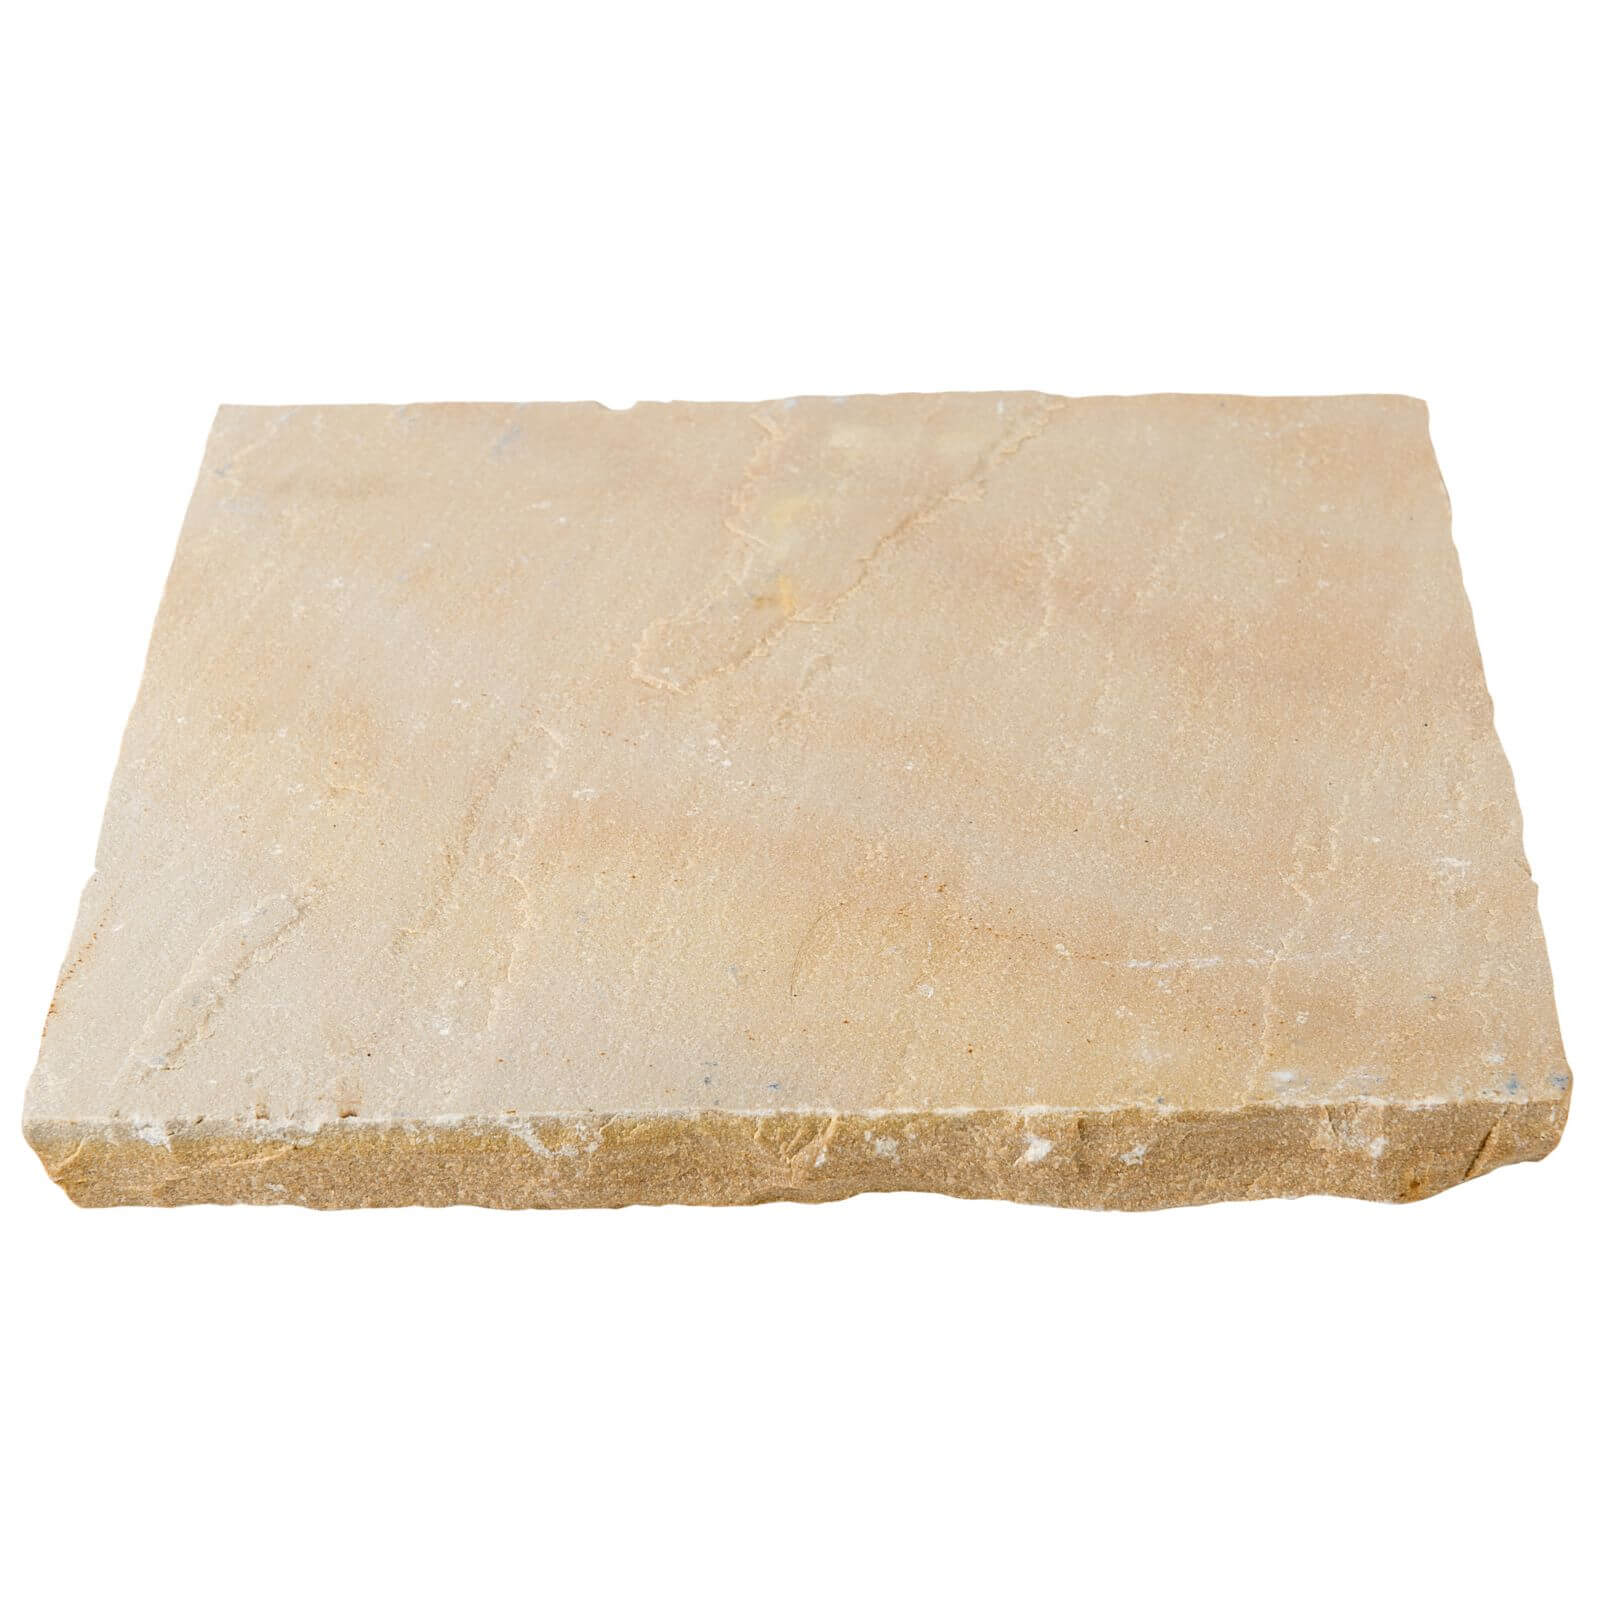 Stylish Stone Natural Sandstone 15.3sq m - Scottish Glen